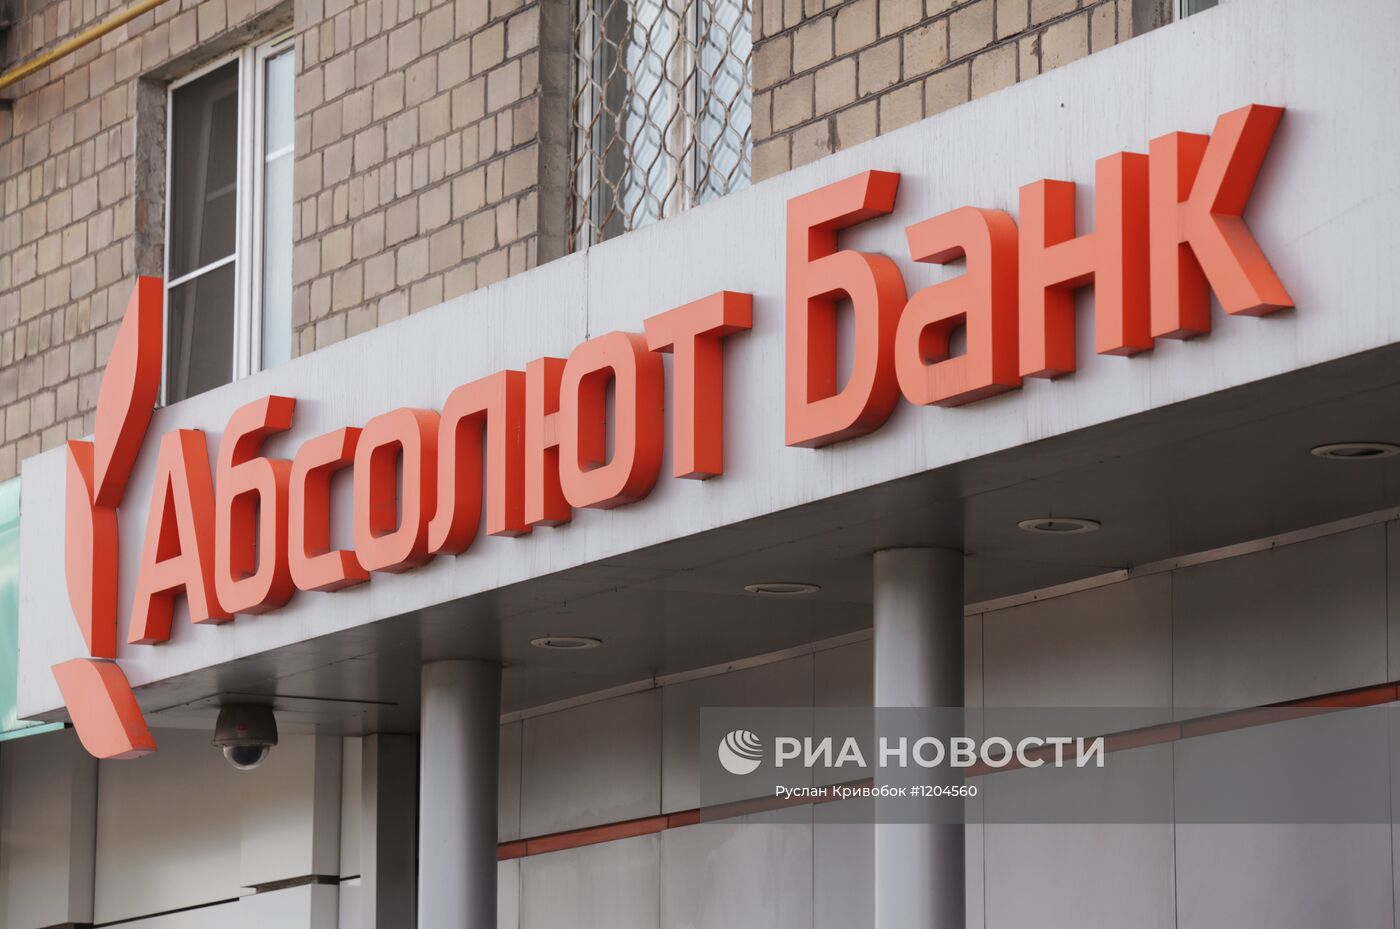 Офис АКБ "Абсолют Банк" в Москве